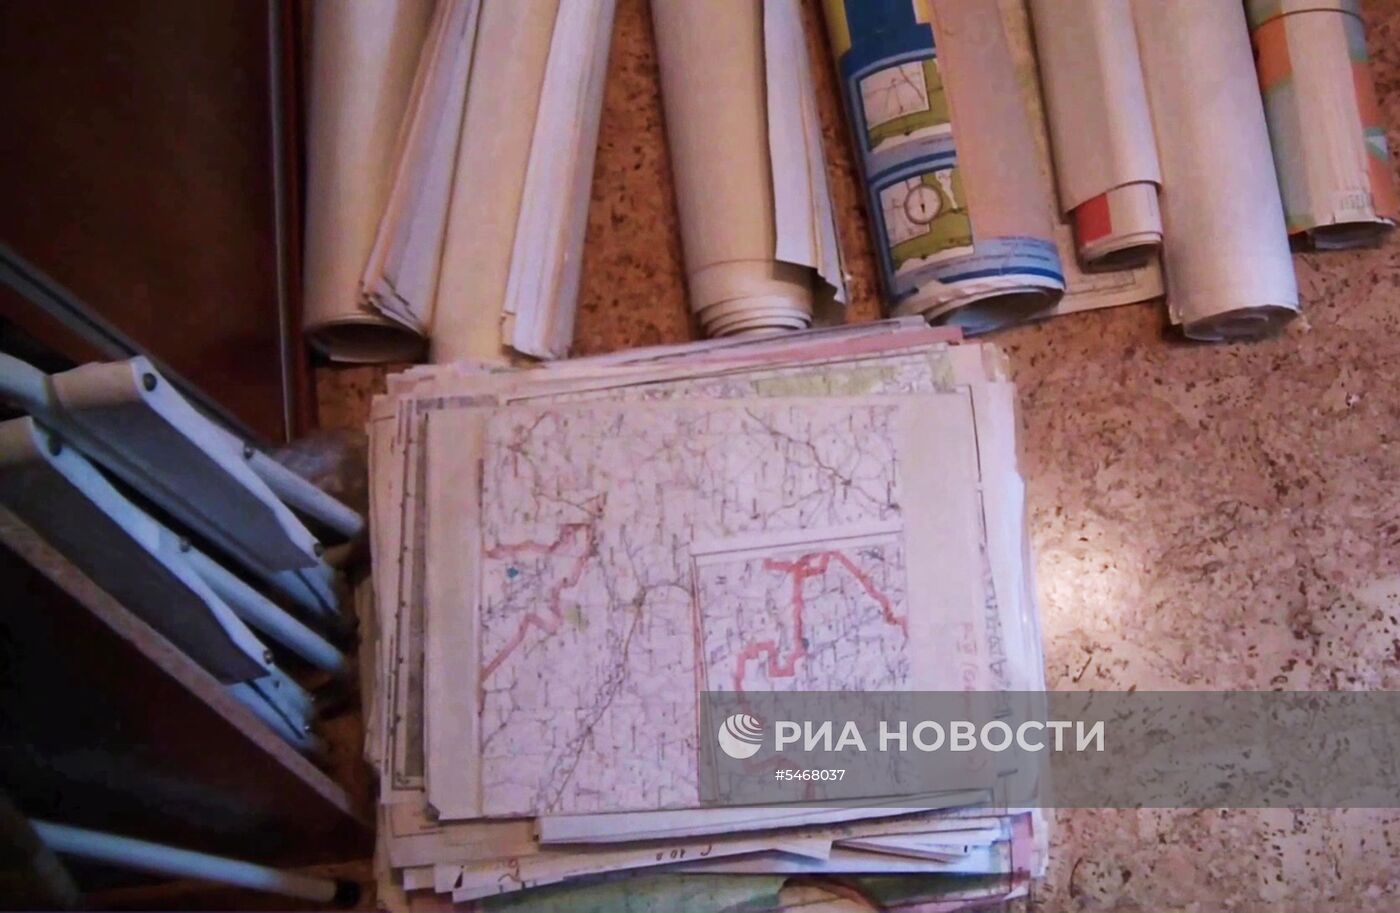 ФСБ РФ пресекла деятельность по незаконному сбору секретных топографических материалов военного назначения